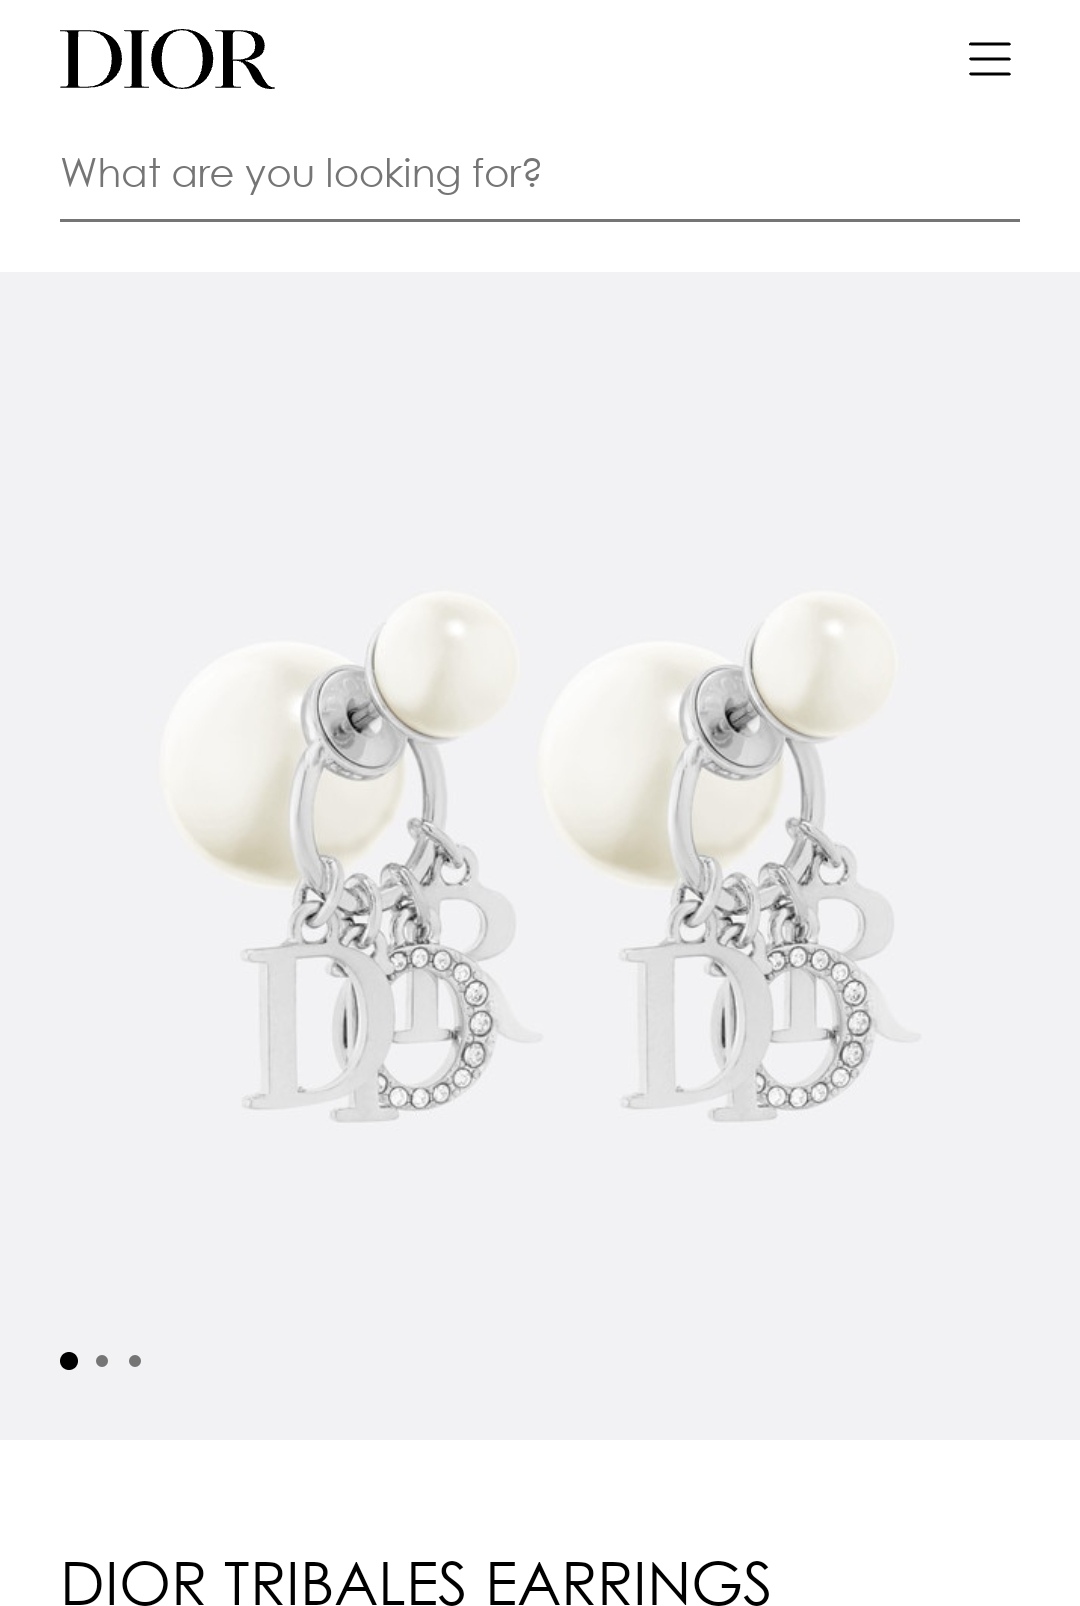 Dior earrings